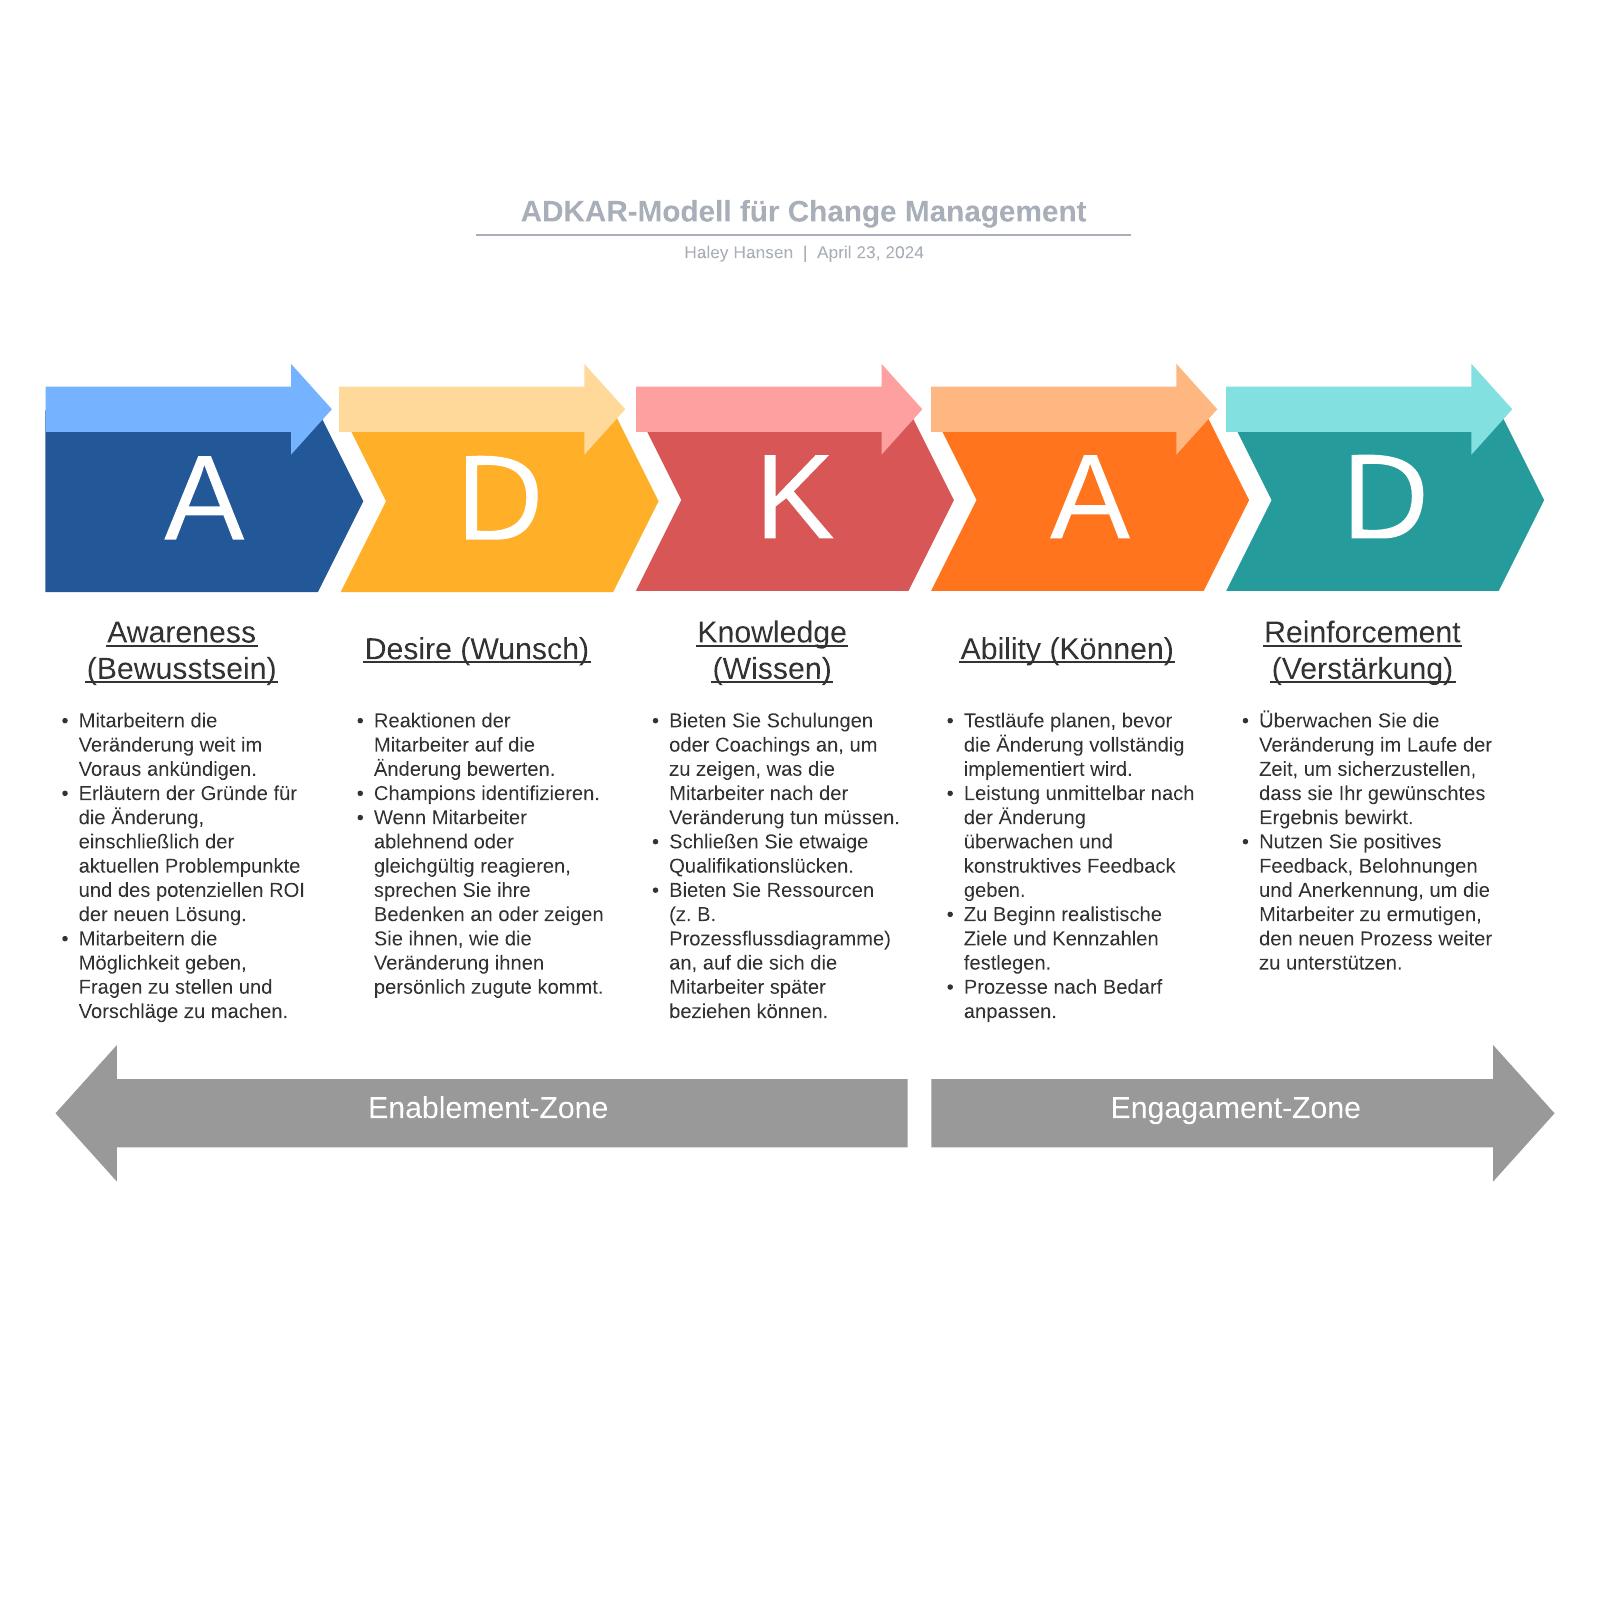 ADKAR-Modell für Change Management